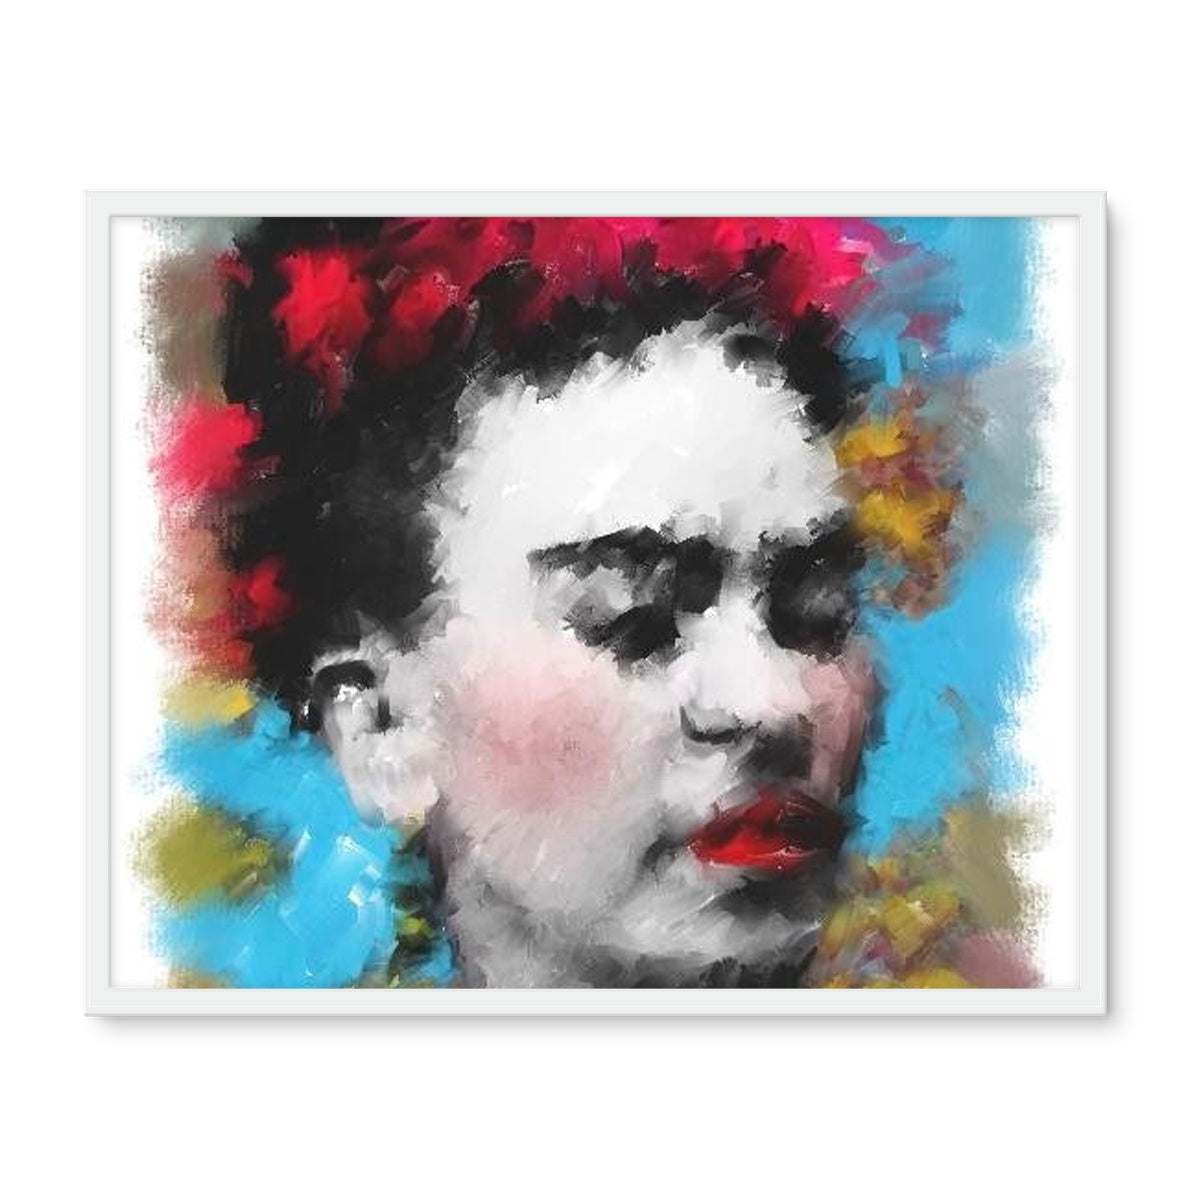 Frida Kahlo - Portrait Framed Photo Tile